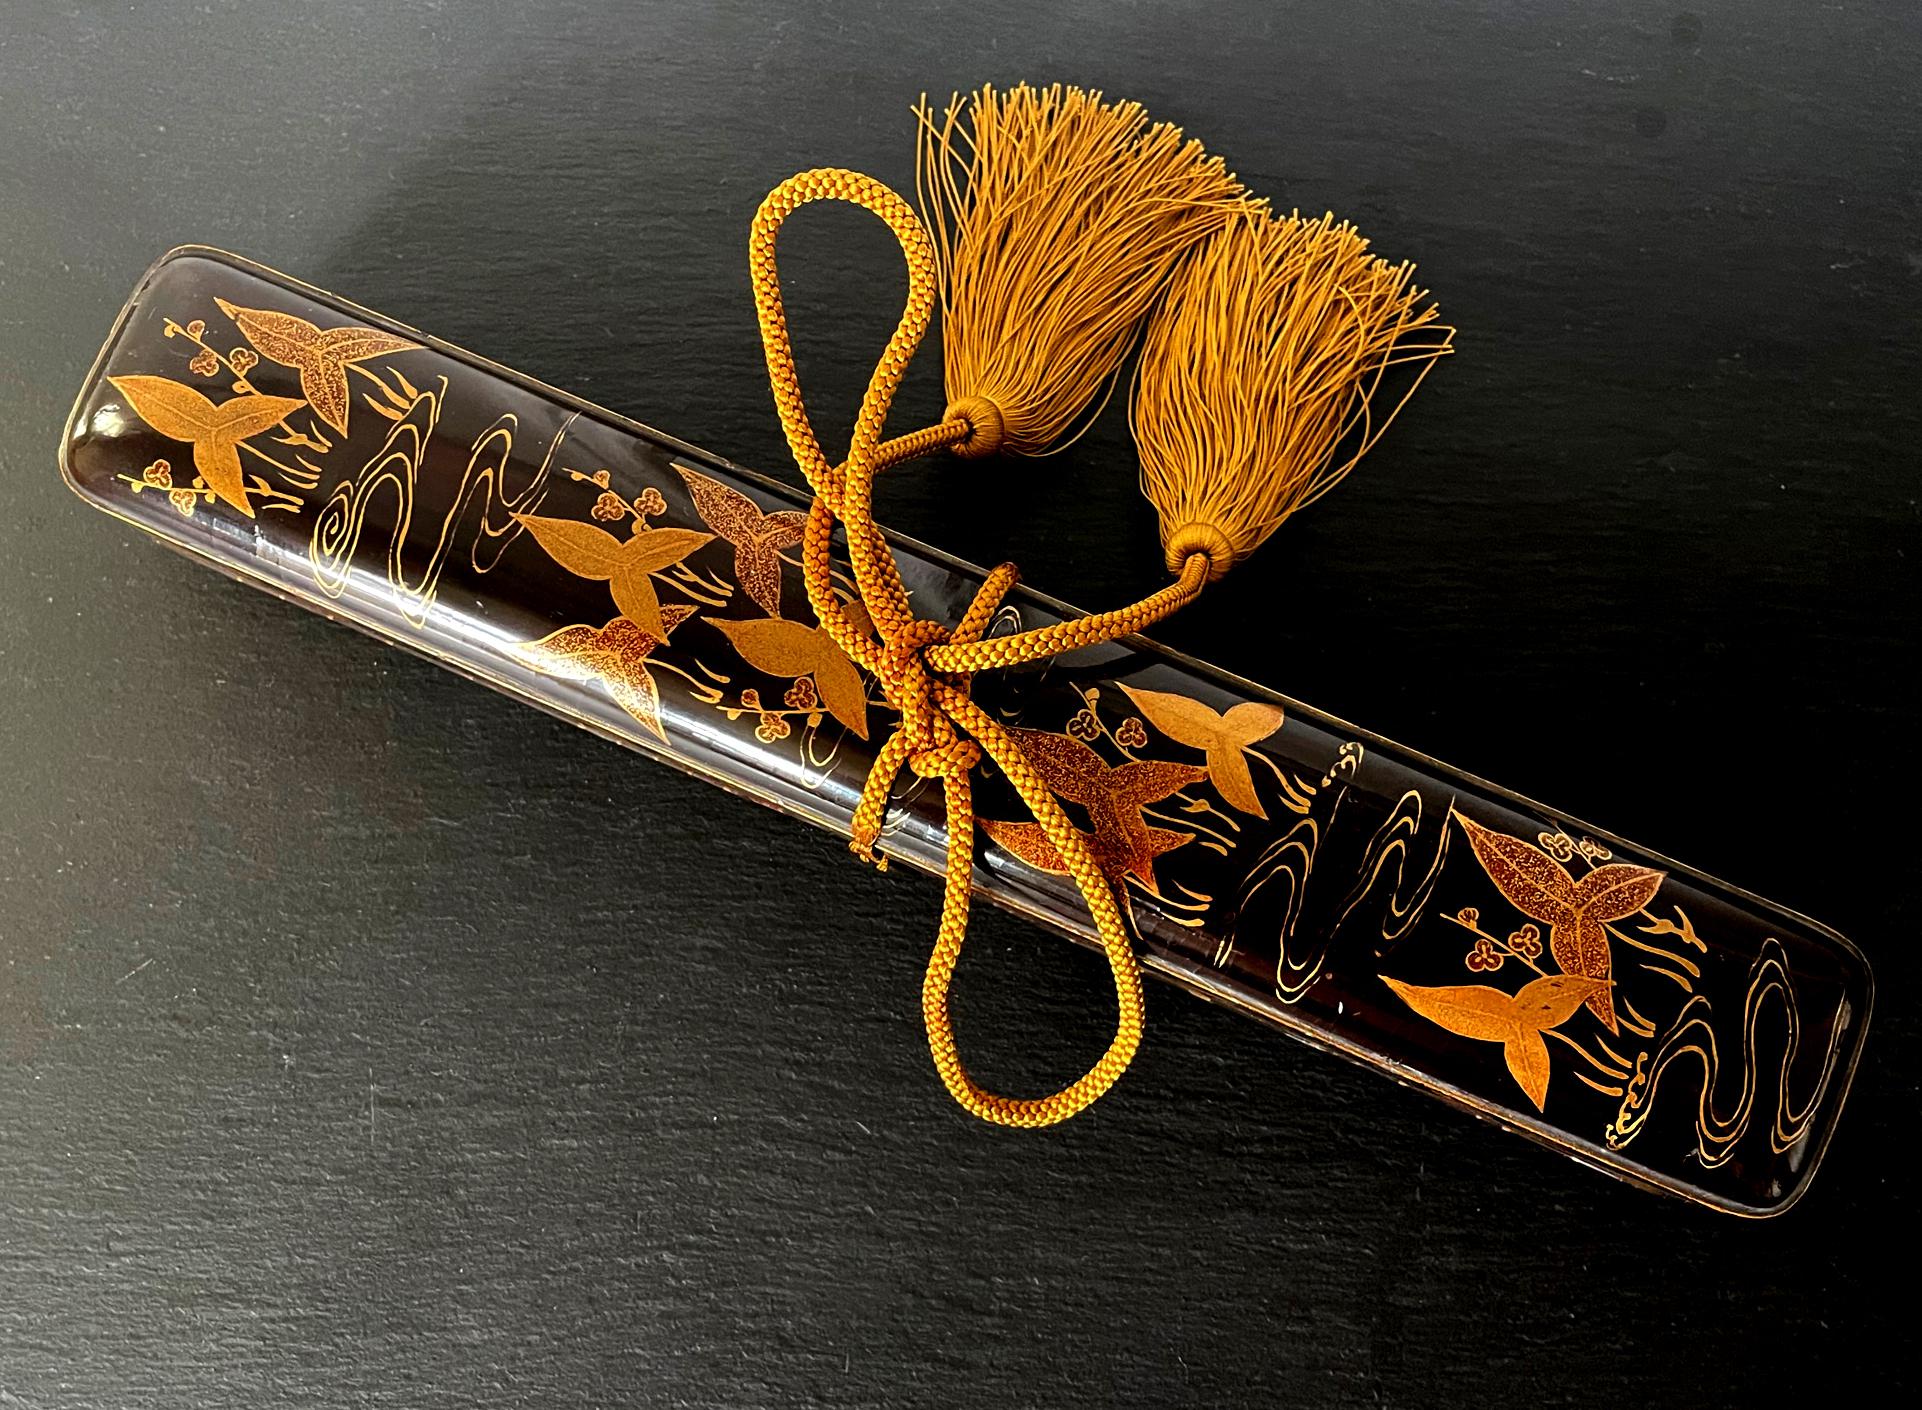 Ein seltener japanischer Fubako aus lackiertem Holz, verziert im Kodaiji-Maki-e-Stil, ca. Anfang des 17. Jahrhunderts, zu Beginn der Edo-Periode, möglicherweise gegen Ende der Azuchi-Momoyama-Periode. Die rechteckige, lange und schlanke Schatulle